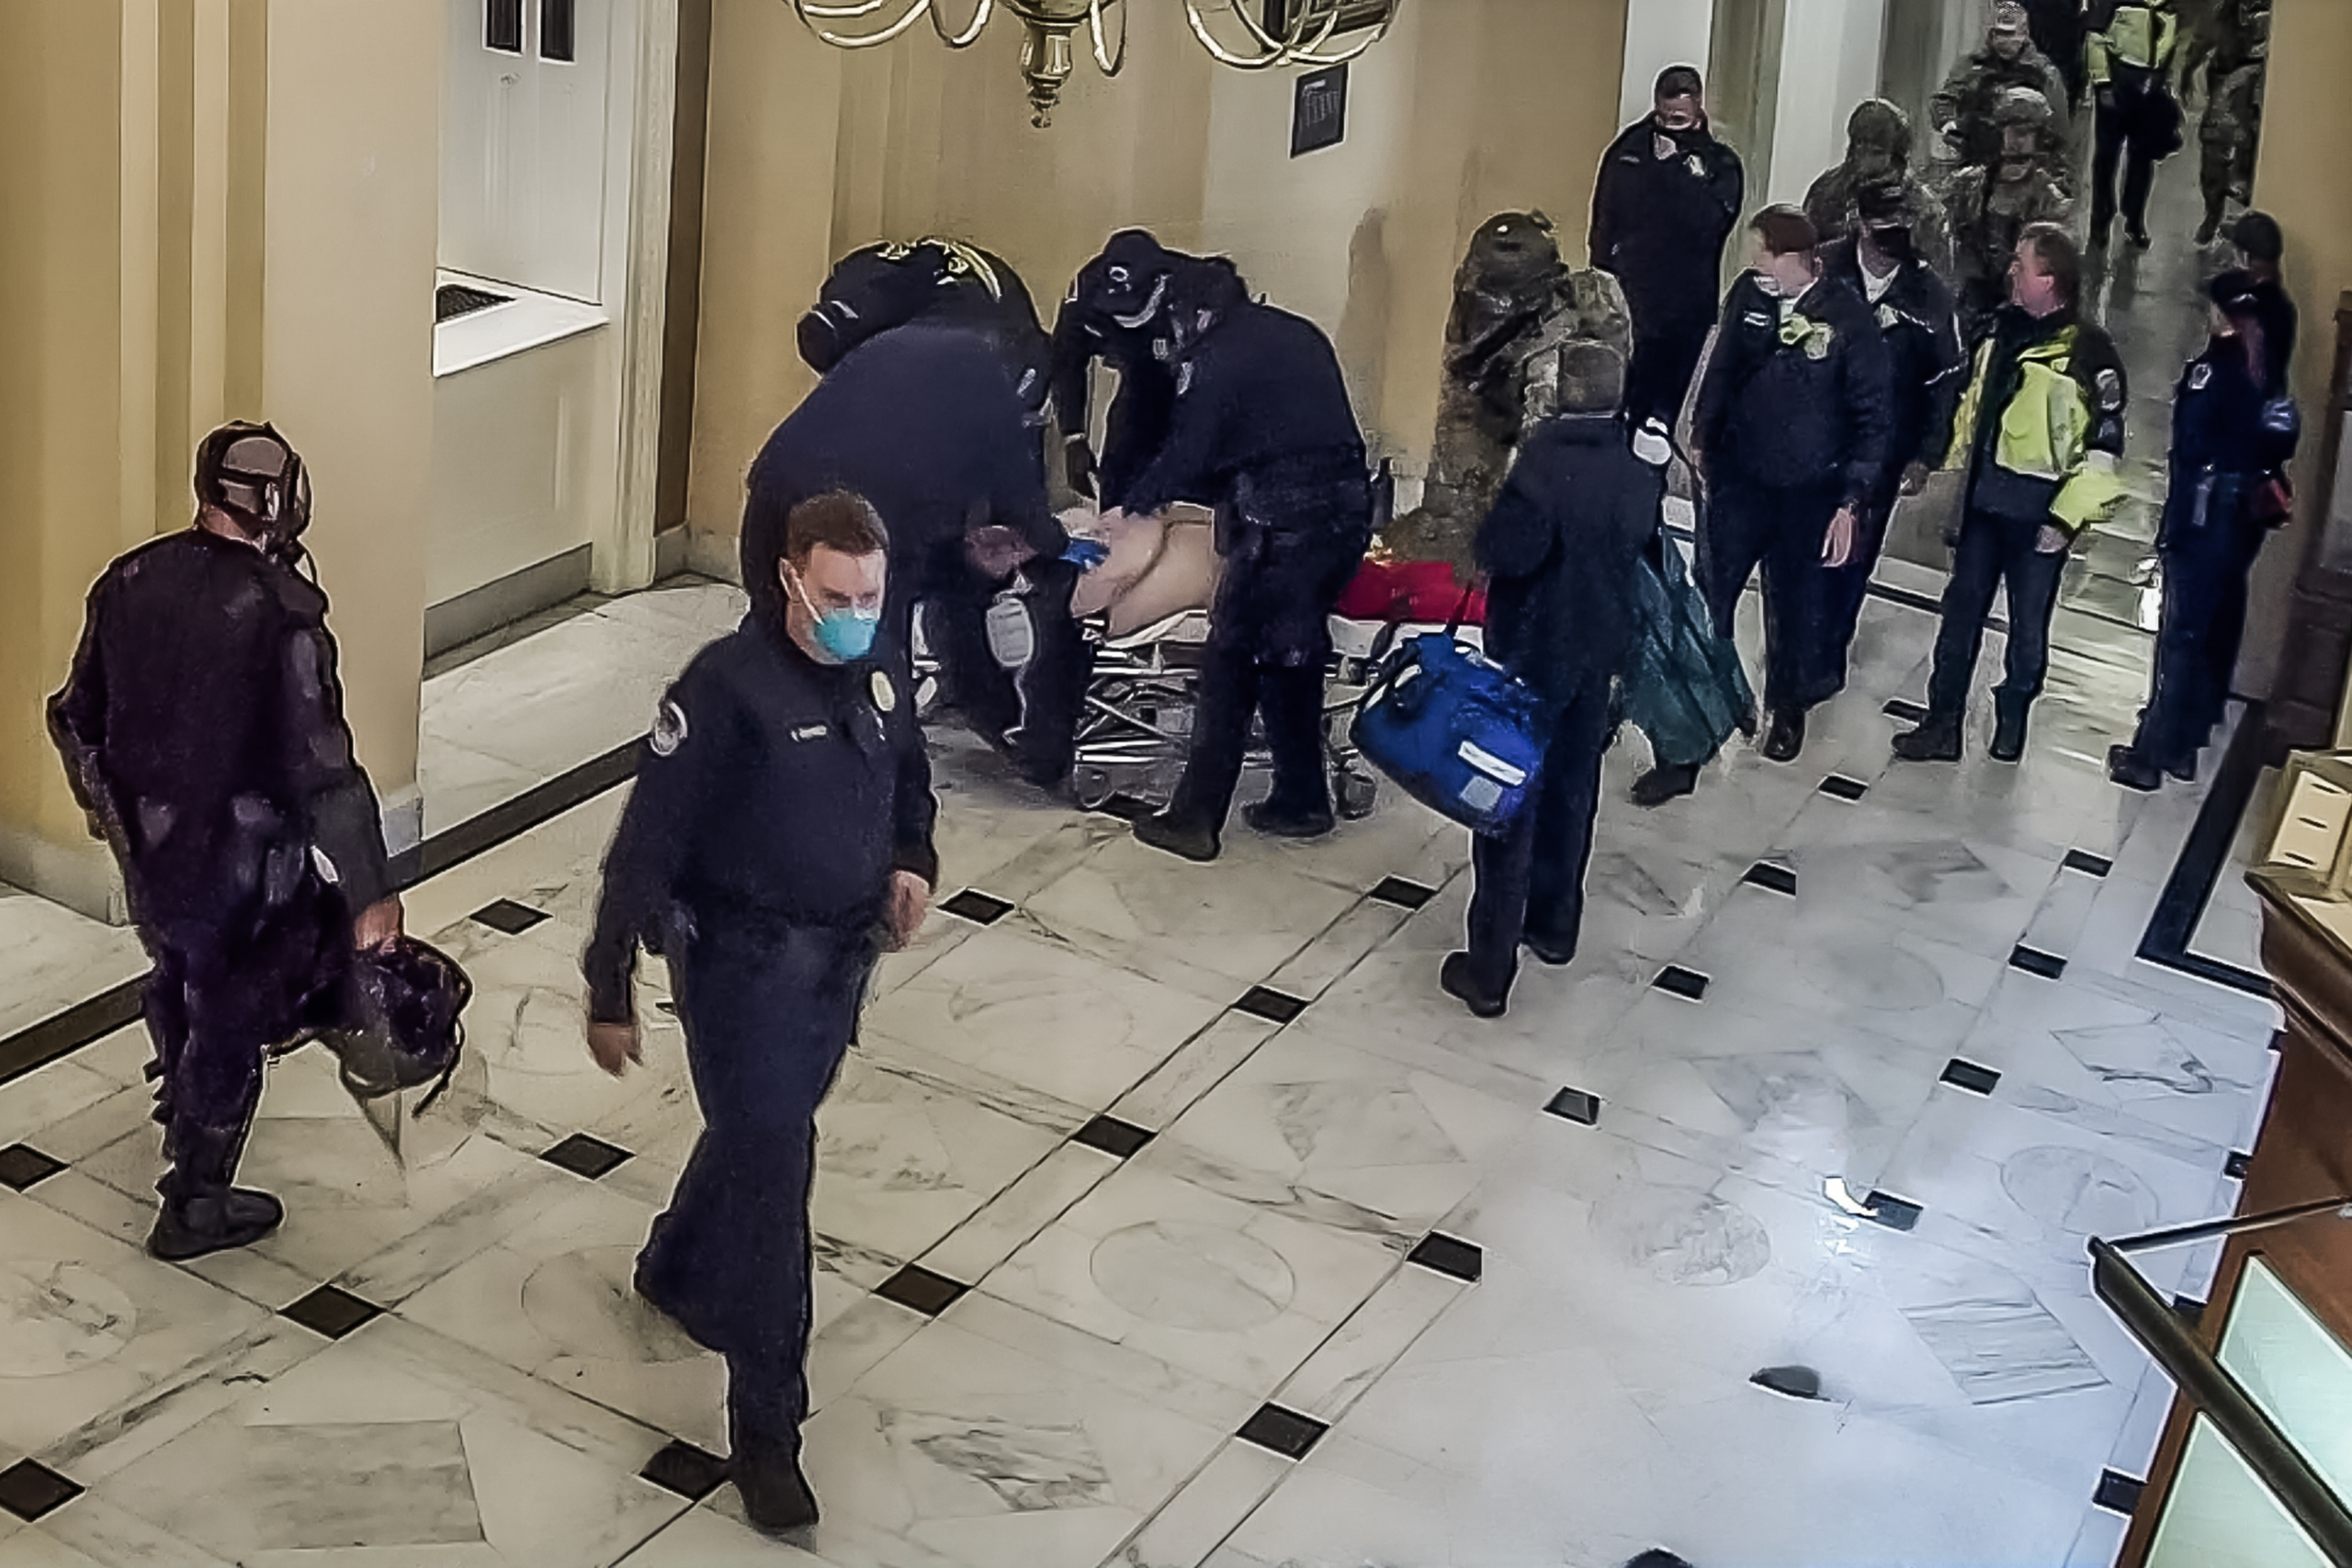 Nhân viên y tế chặn cáng chở cô Rosanne Boyland gần Cửa Cánh Hạ viện tại Tòa nhà Quốc hội Hoa Kỳ và chuyển cô ấy xuống tầng để tiếp tục hô hấp nhân tạo vào ngày 06/01/2021. (Ảnh: Cảnh sát Tòa nahf Capitol Hoa Kỳ/Ảnh chụp màn hình qua The Epoch Times)